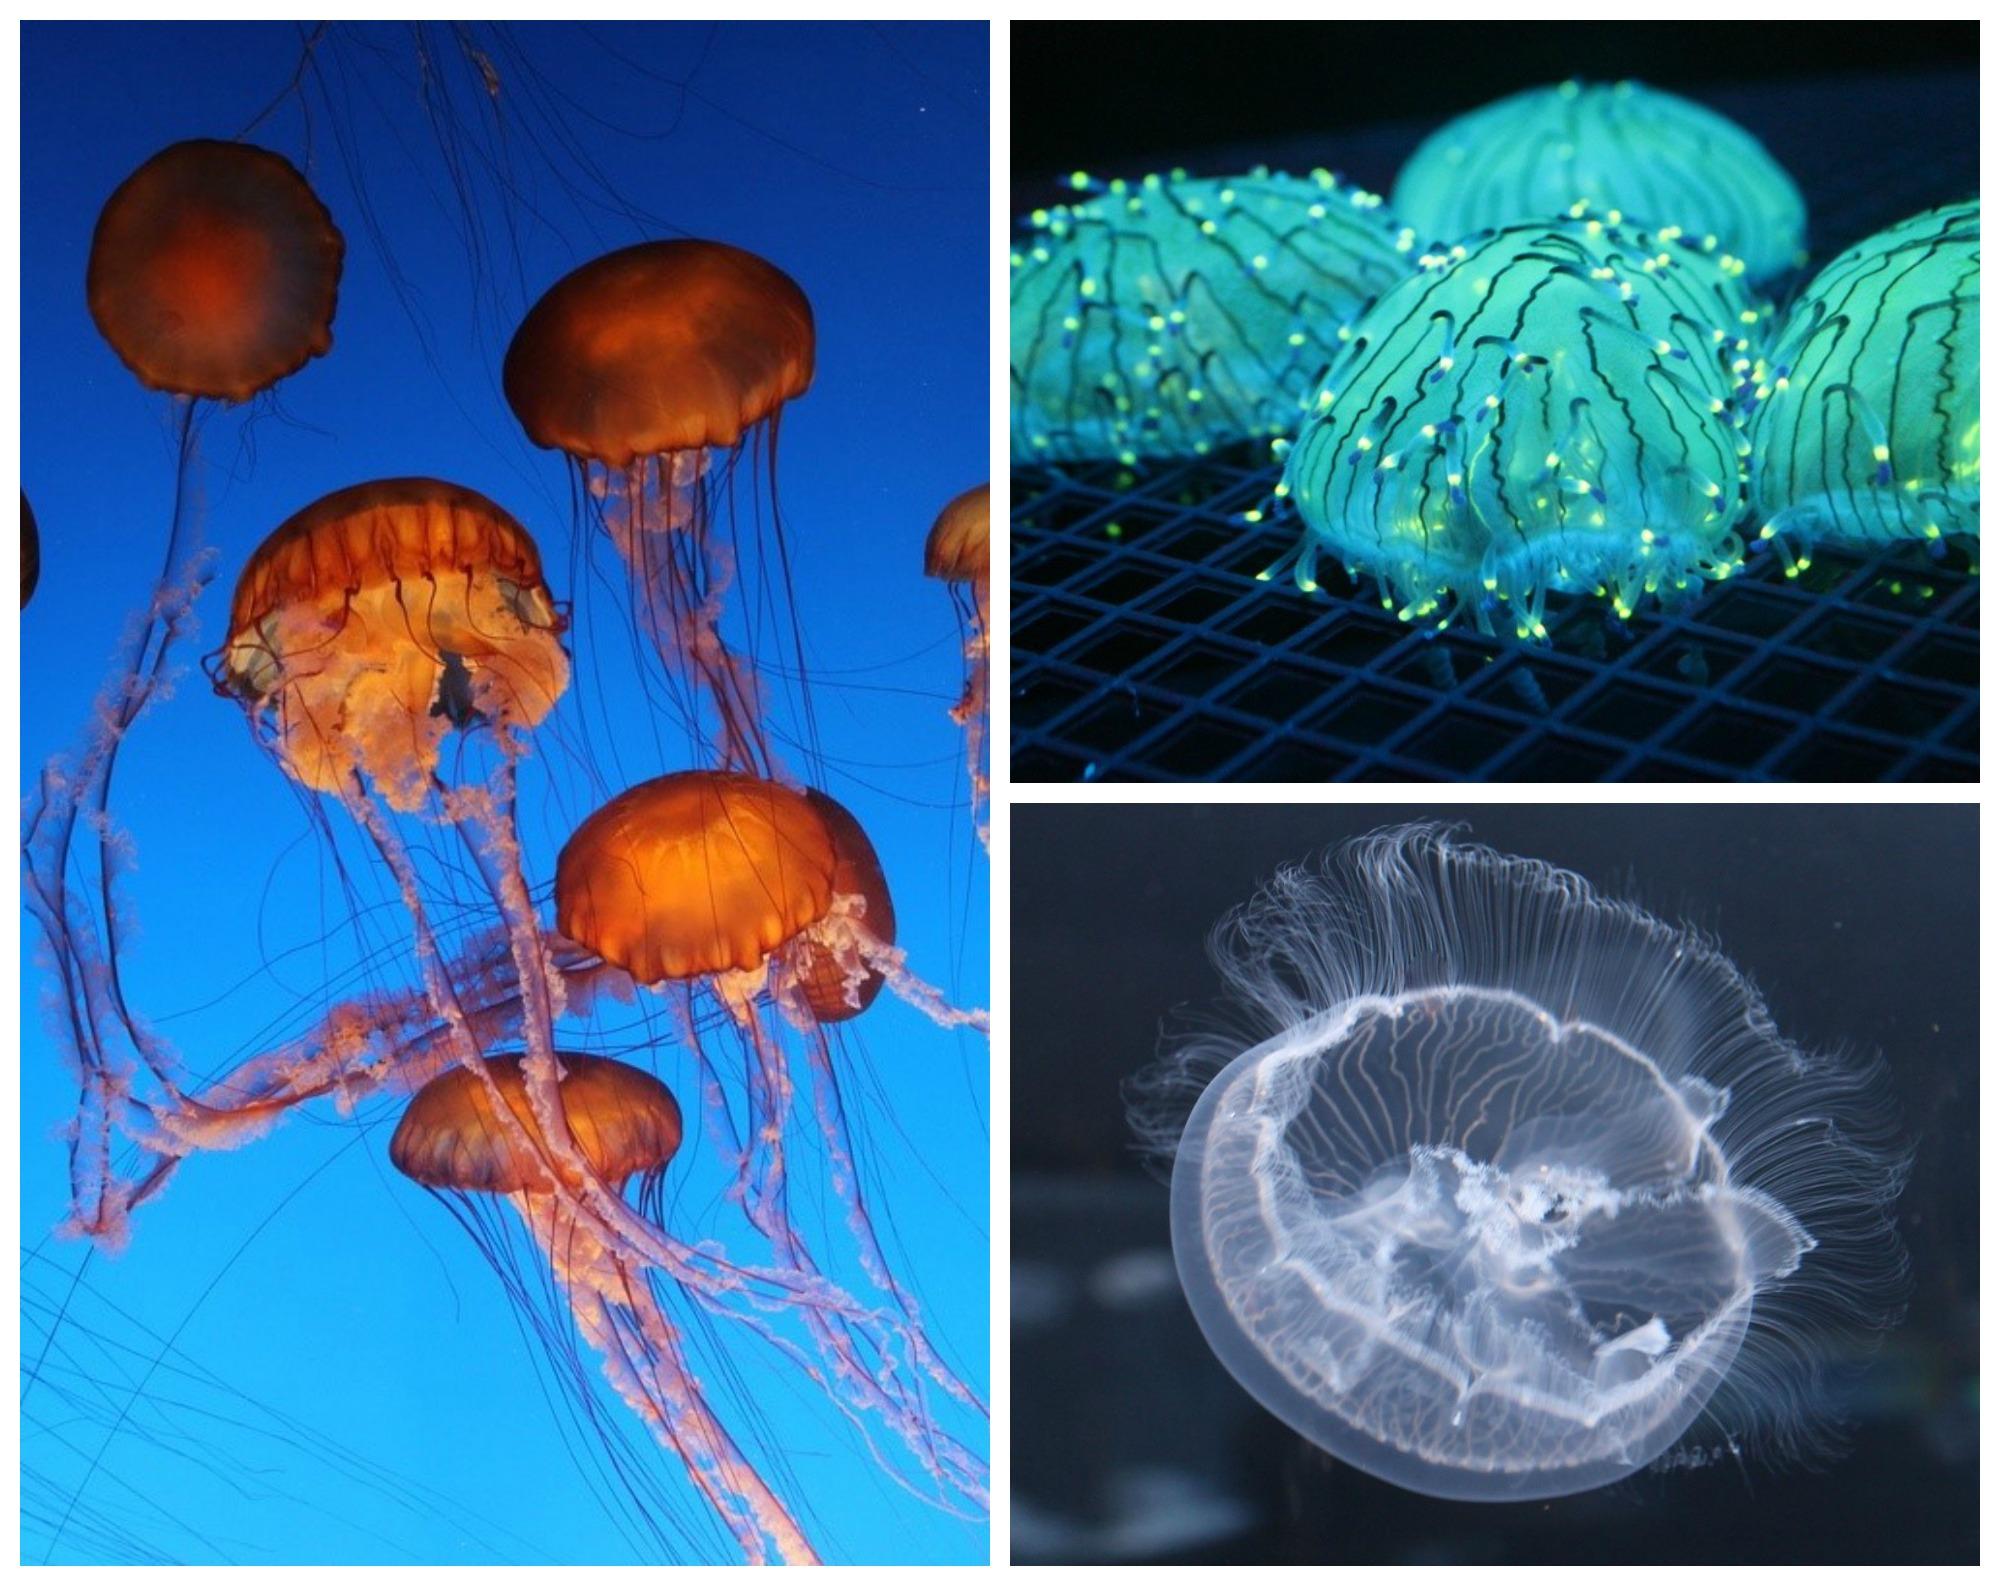 jellyfishcollage